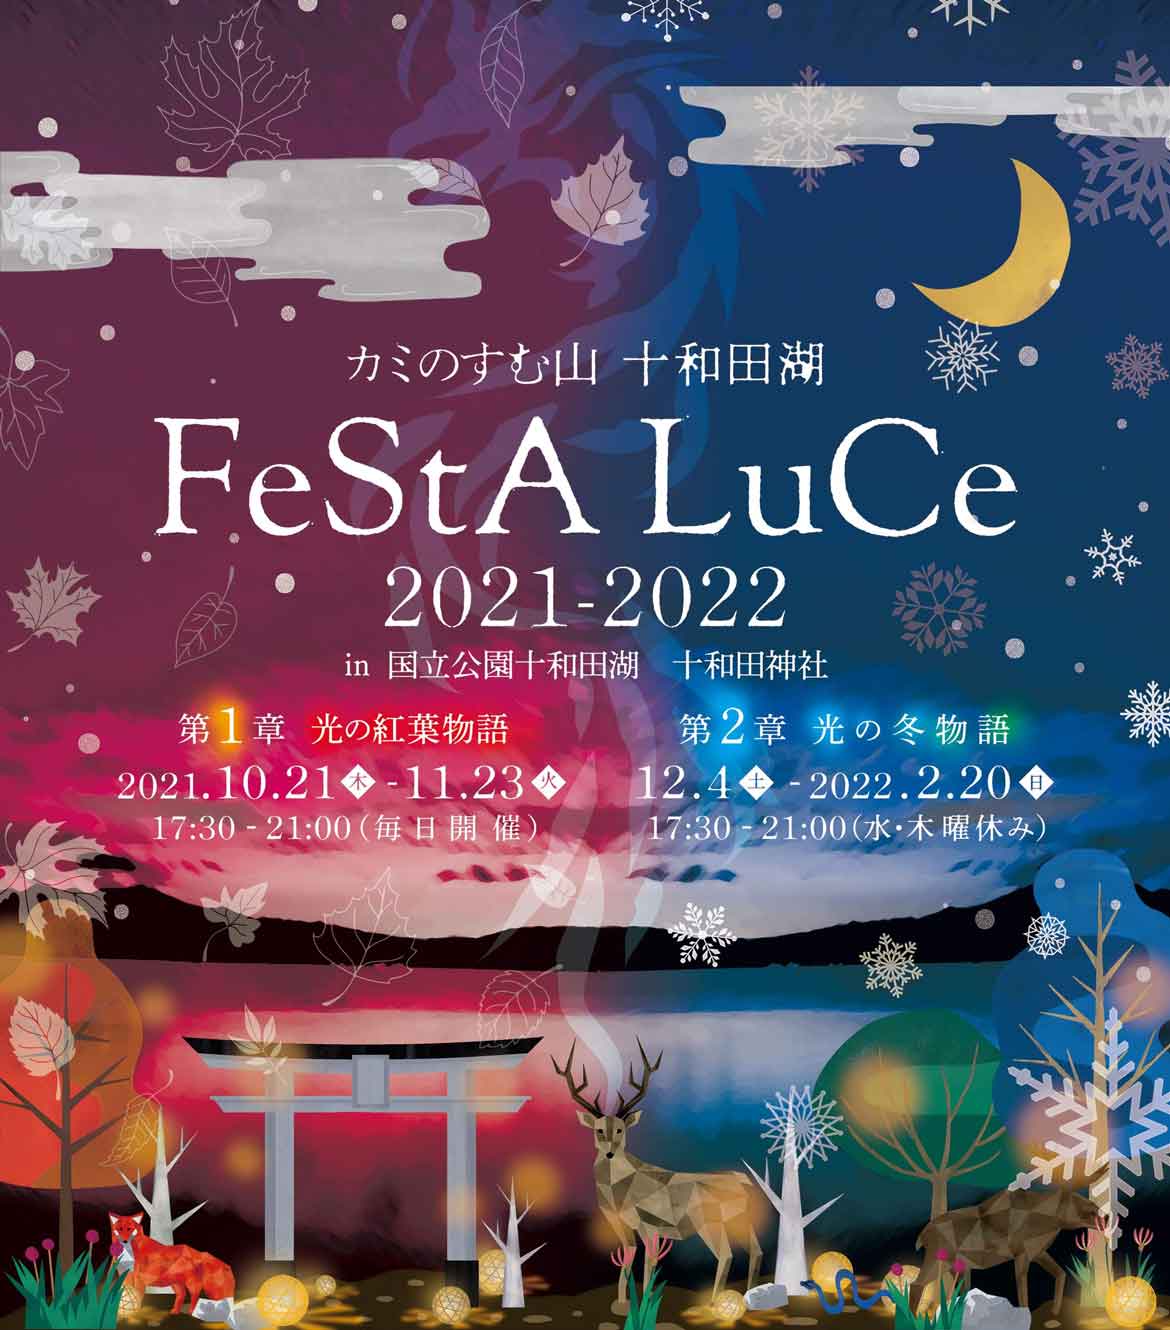 光の祭典フェスタルーチェ『カミのすむ山十和田湖 FeStA LuCe』。今年は更にスケールアップして開催決定